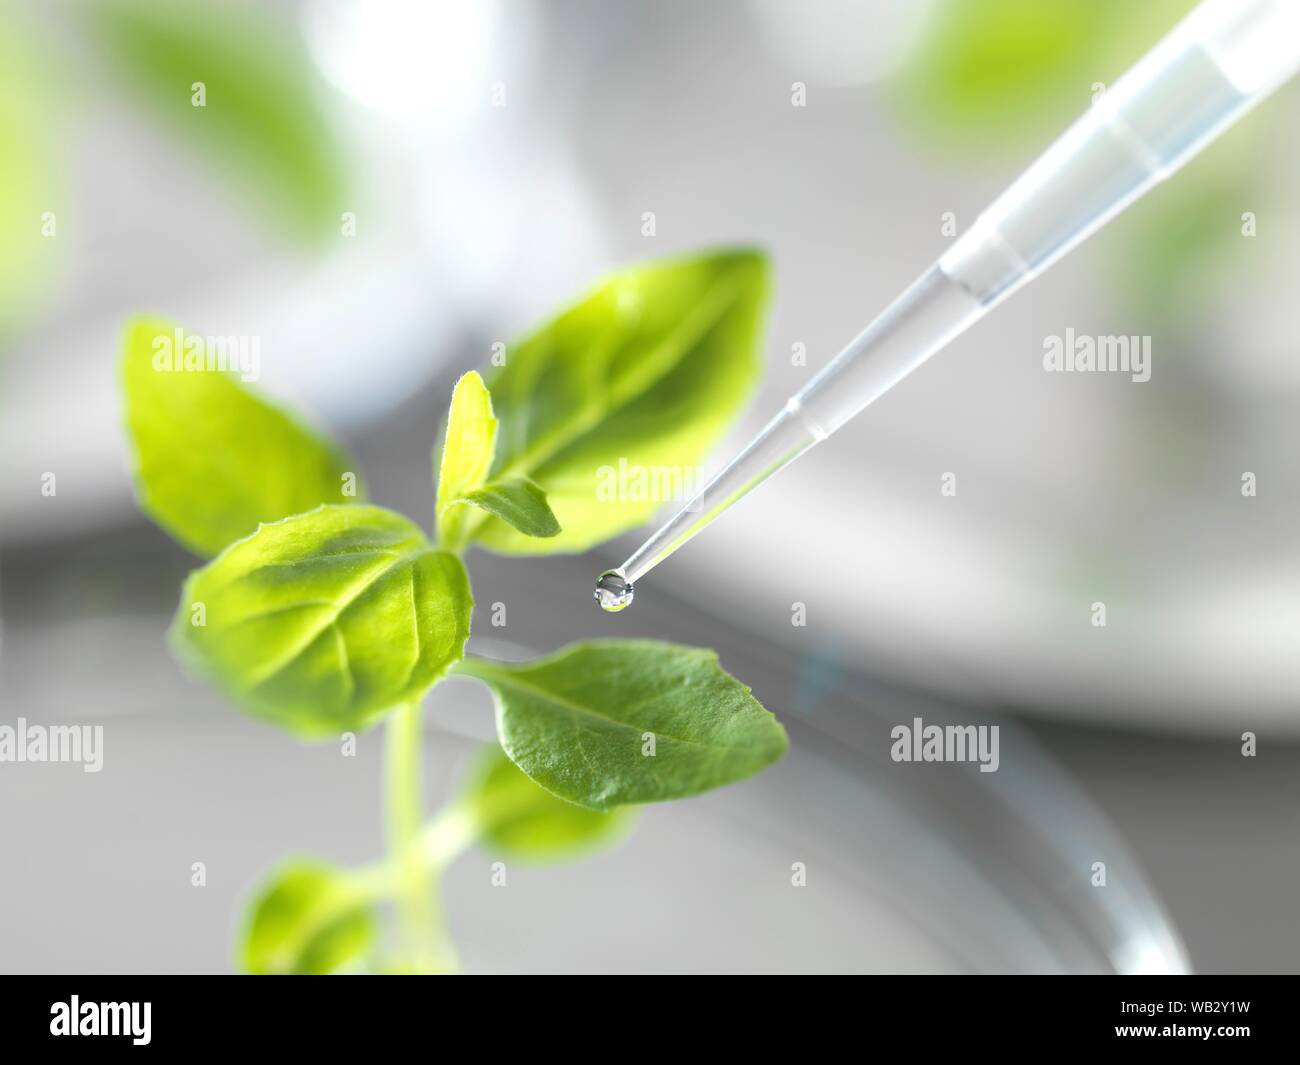 Scienza delle piante immagini e fotografie stock ad alta risoluzione - Alamy